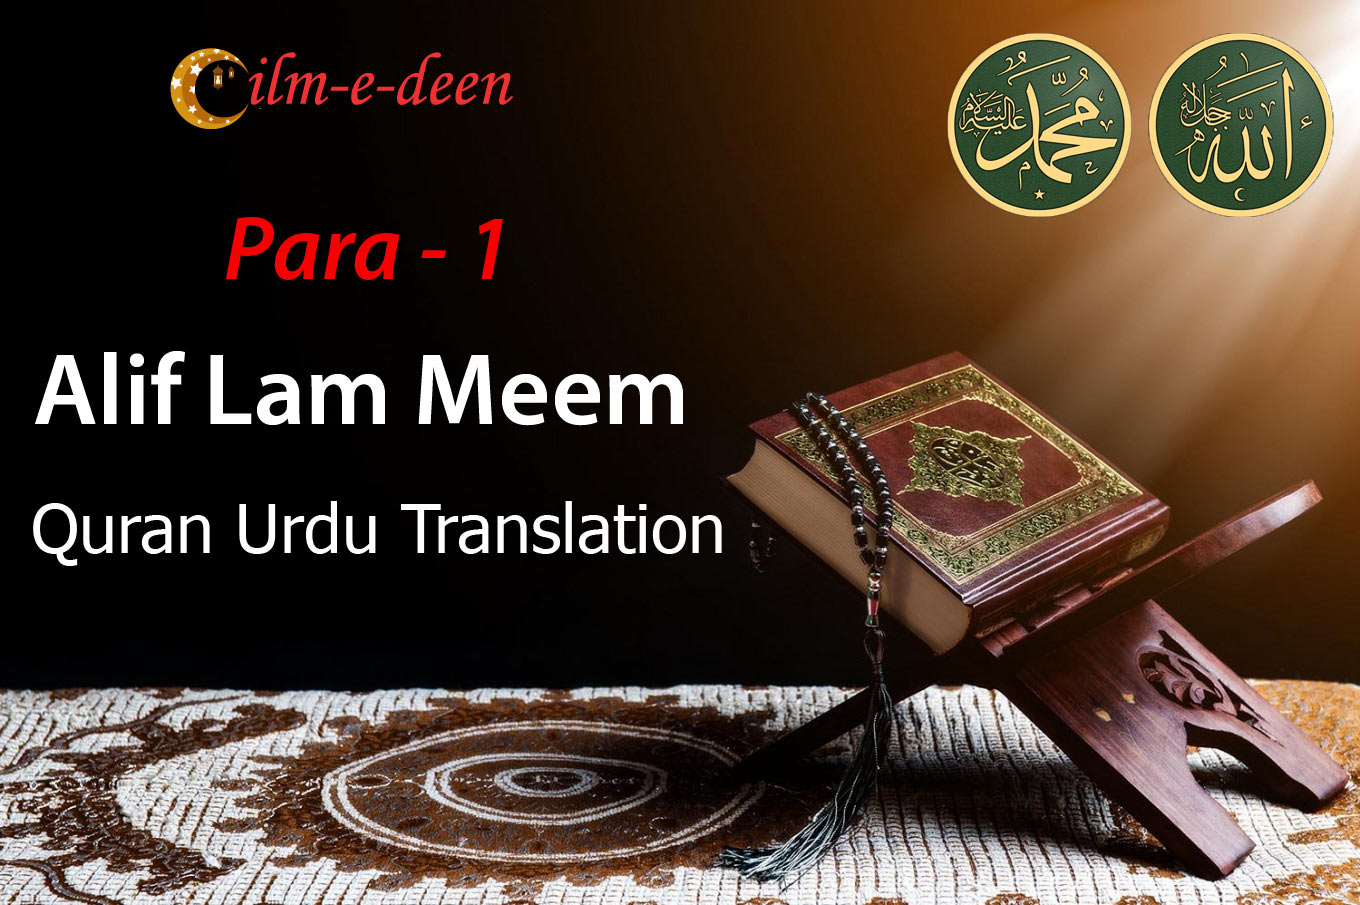 Alif Lam Meem